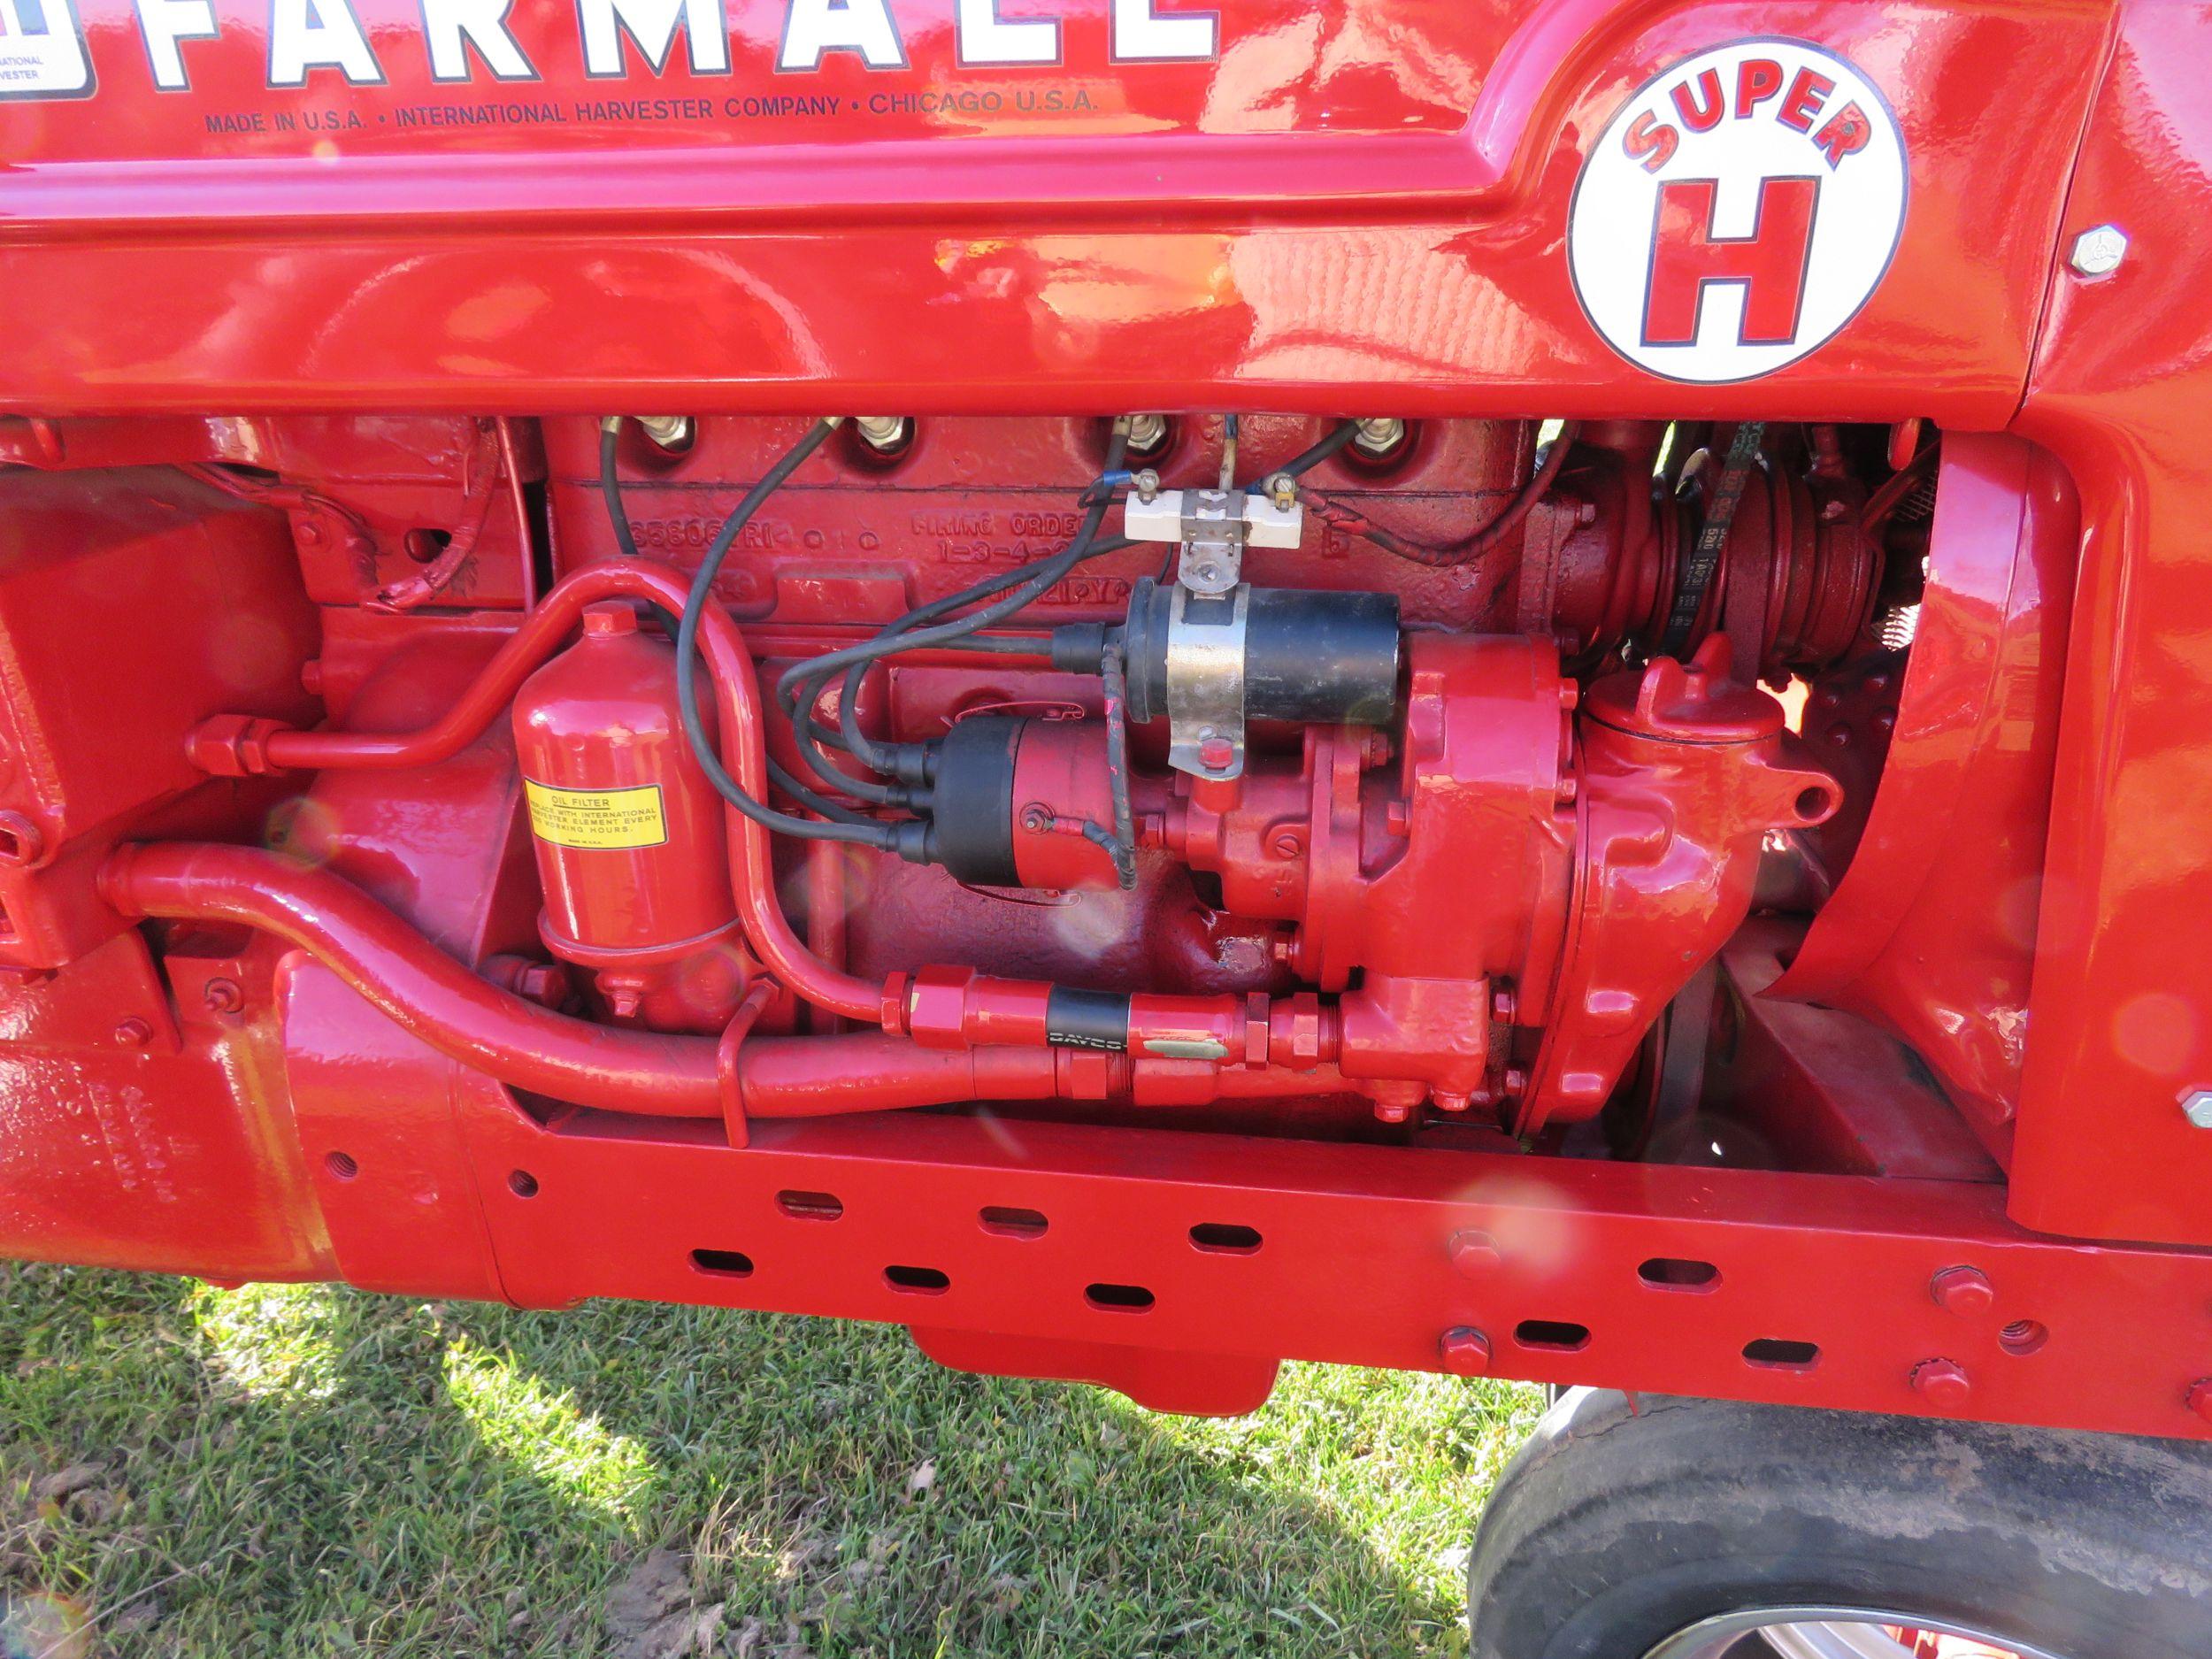 1953 Farmall Super H Tractor